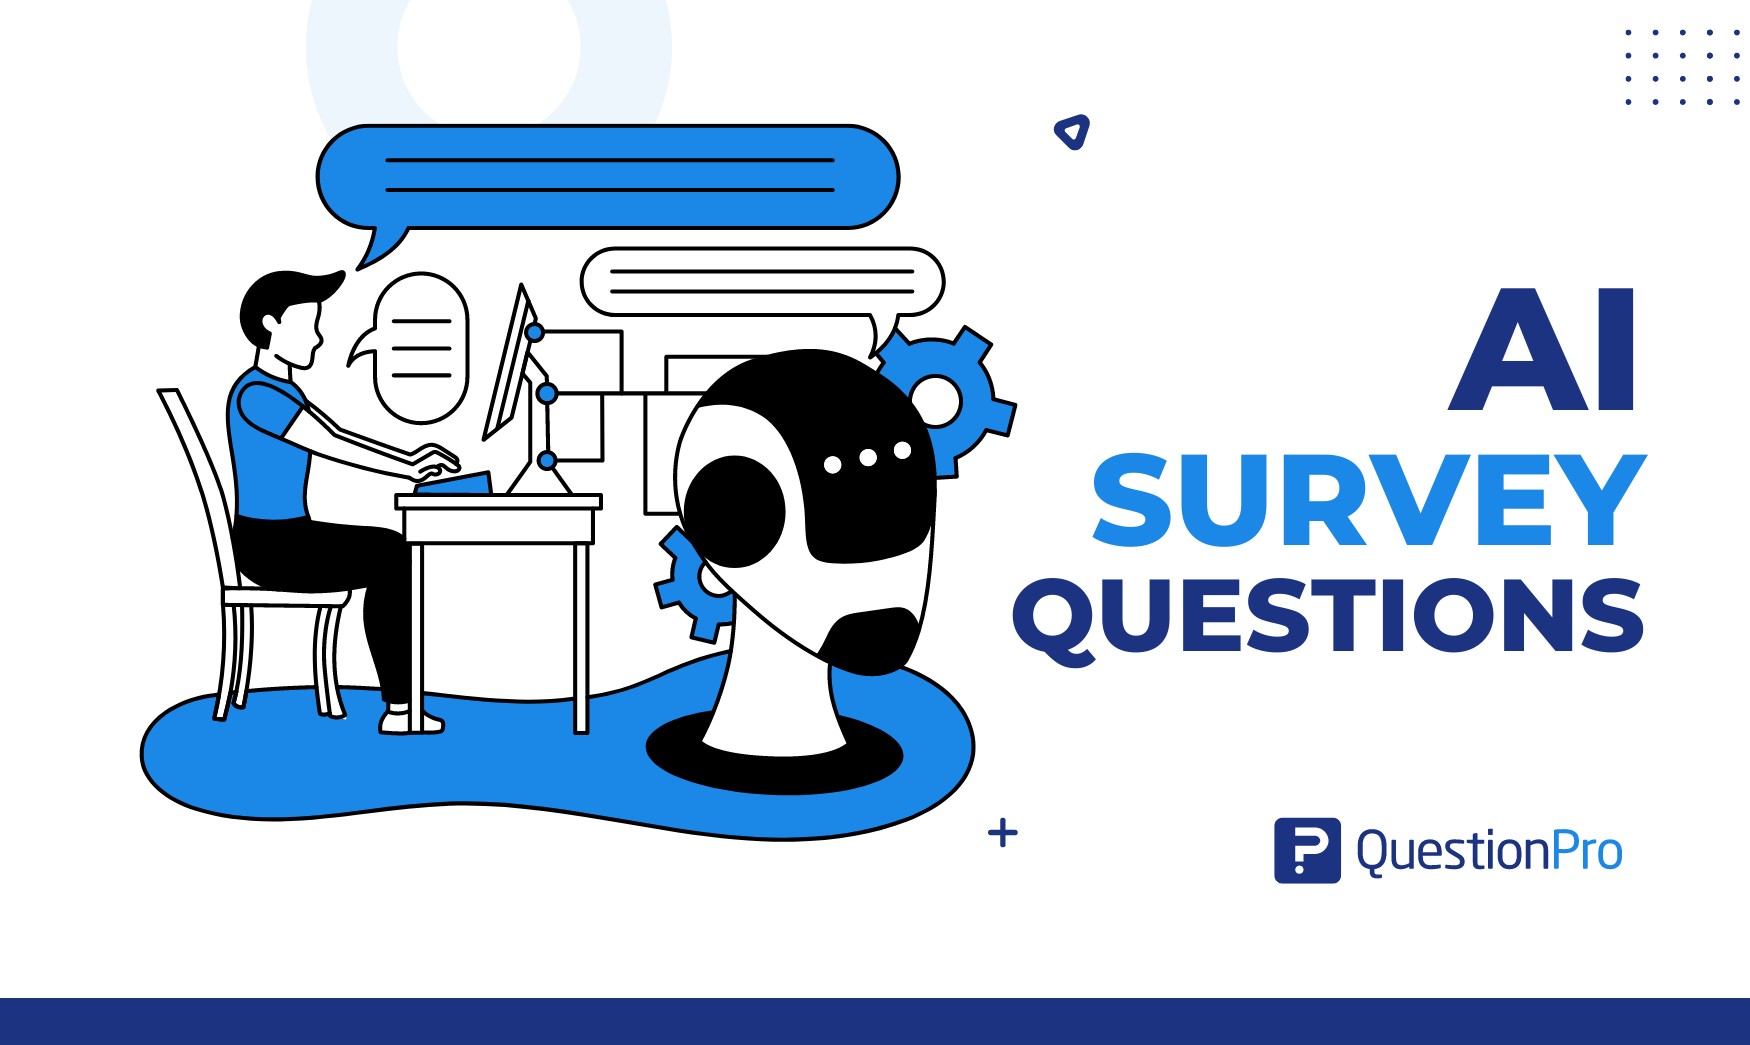 AI survey questions